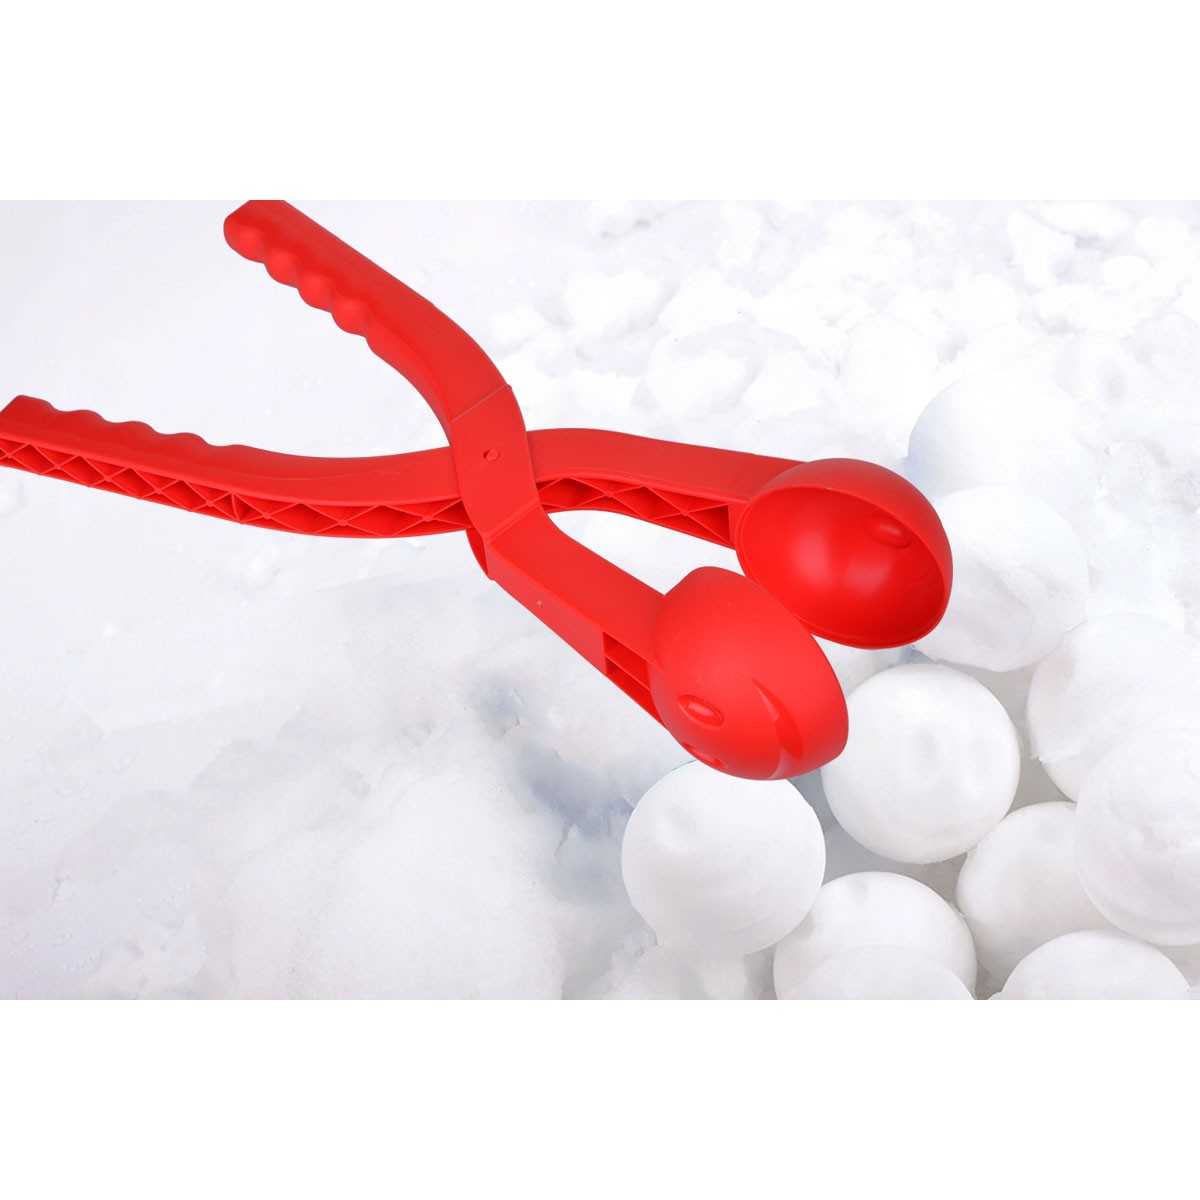 Sniego gniūžčių aparatas - BallMaker, raudonas